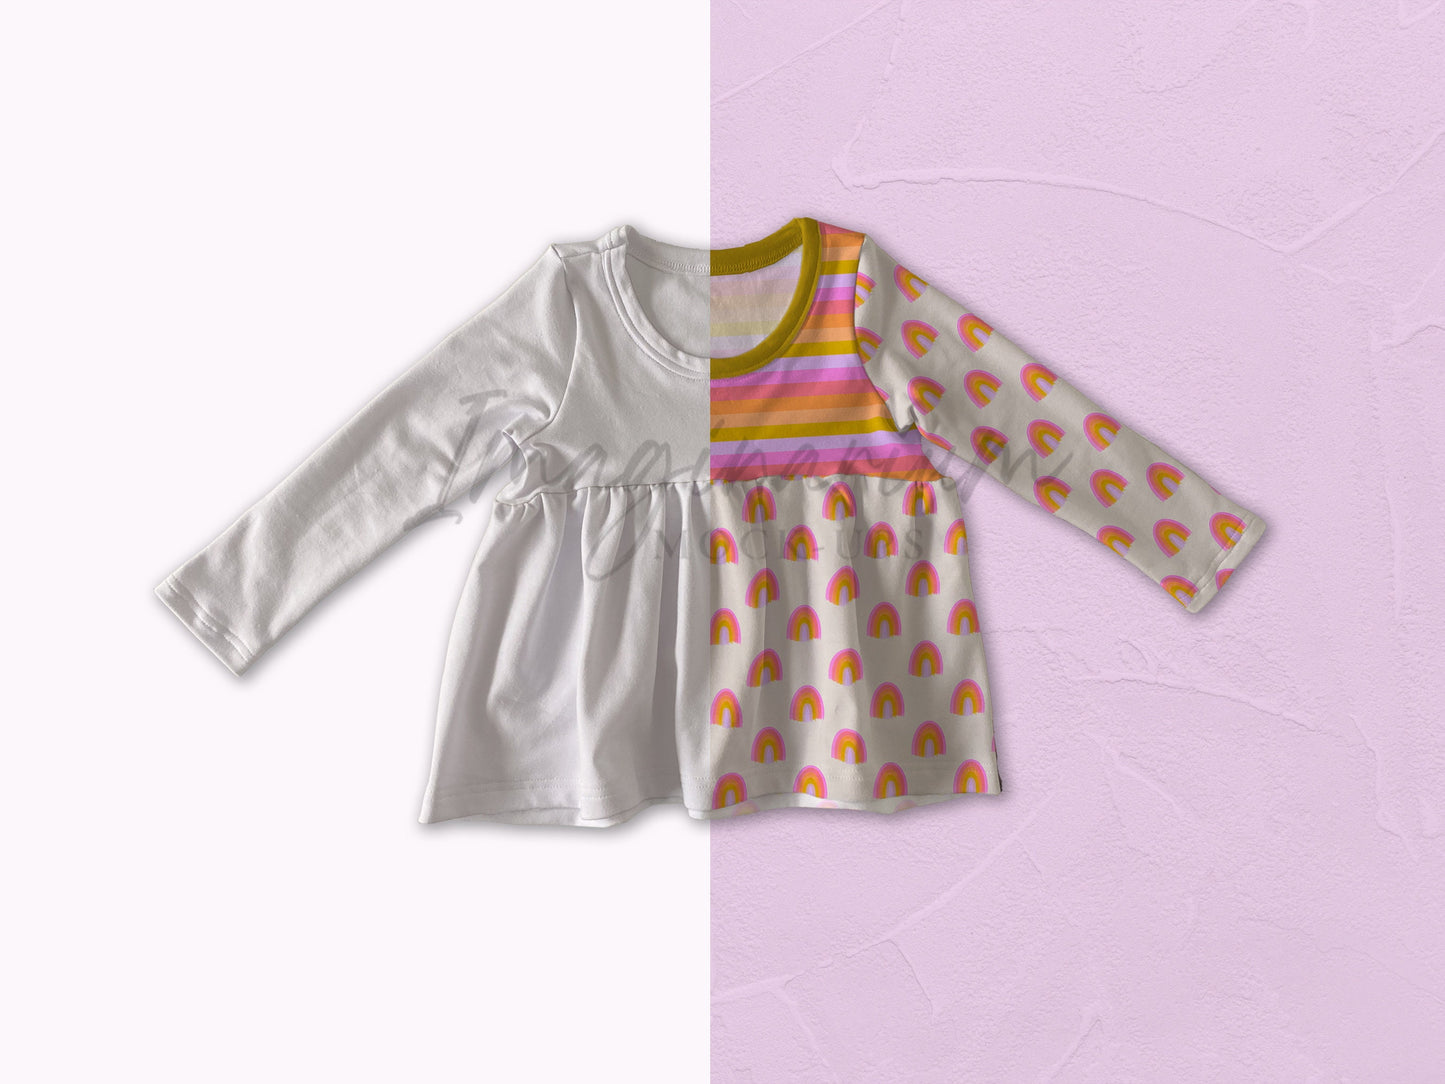 Long Sleeve Peplum Shirt Mock Up, Realistic Clothing Mockup for Photoshop and Procreate